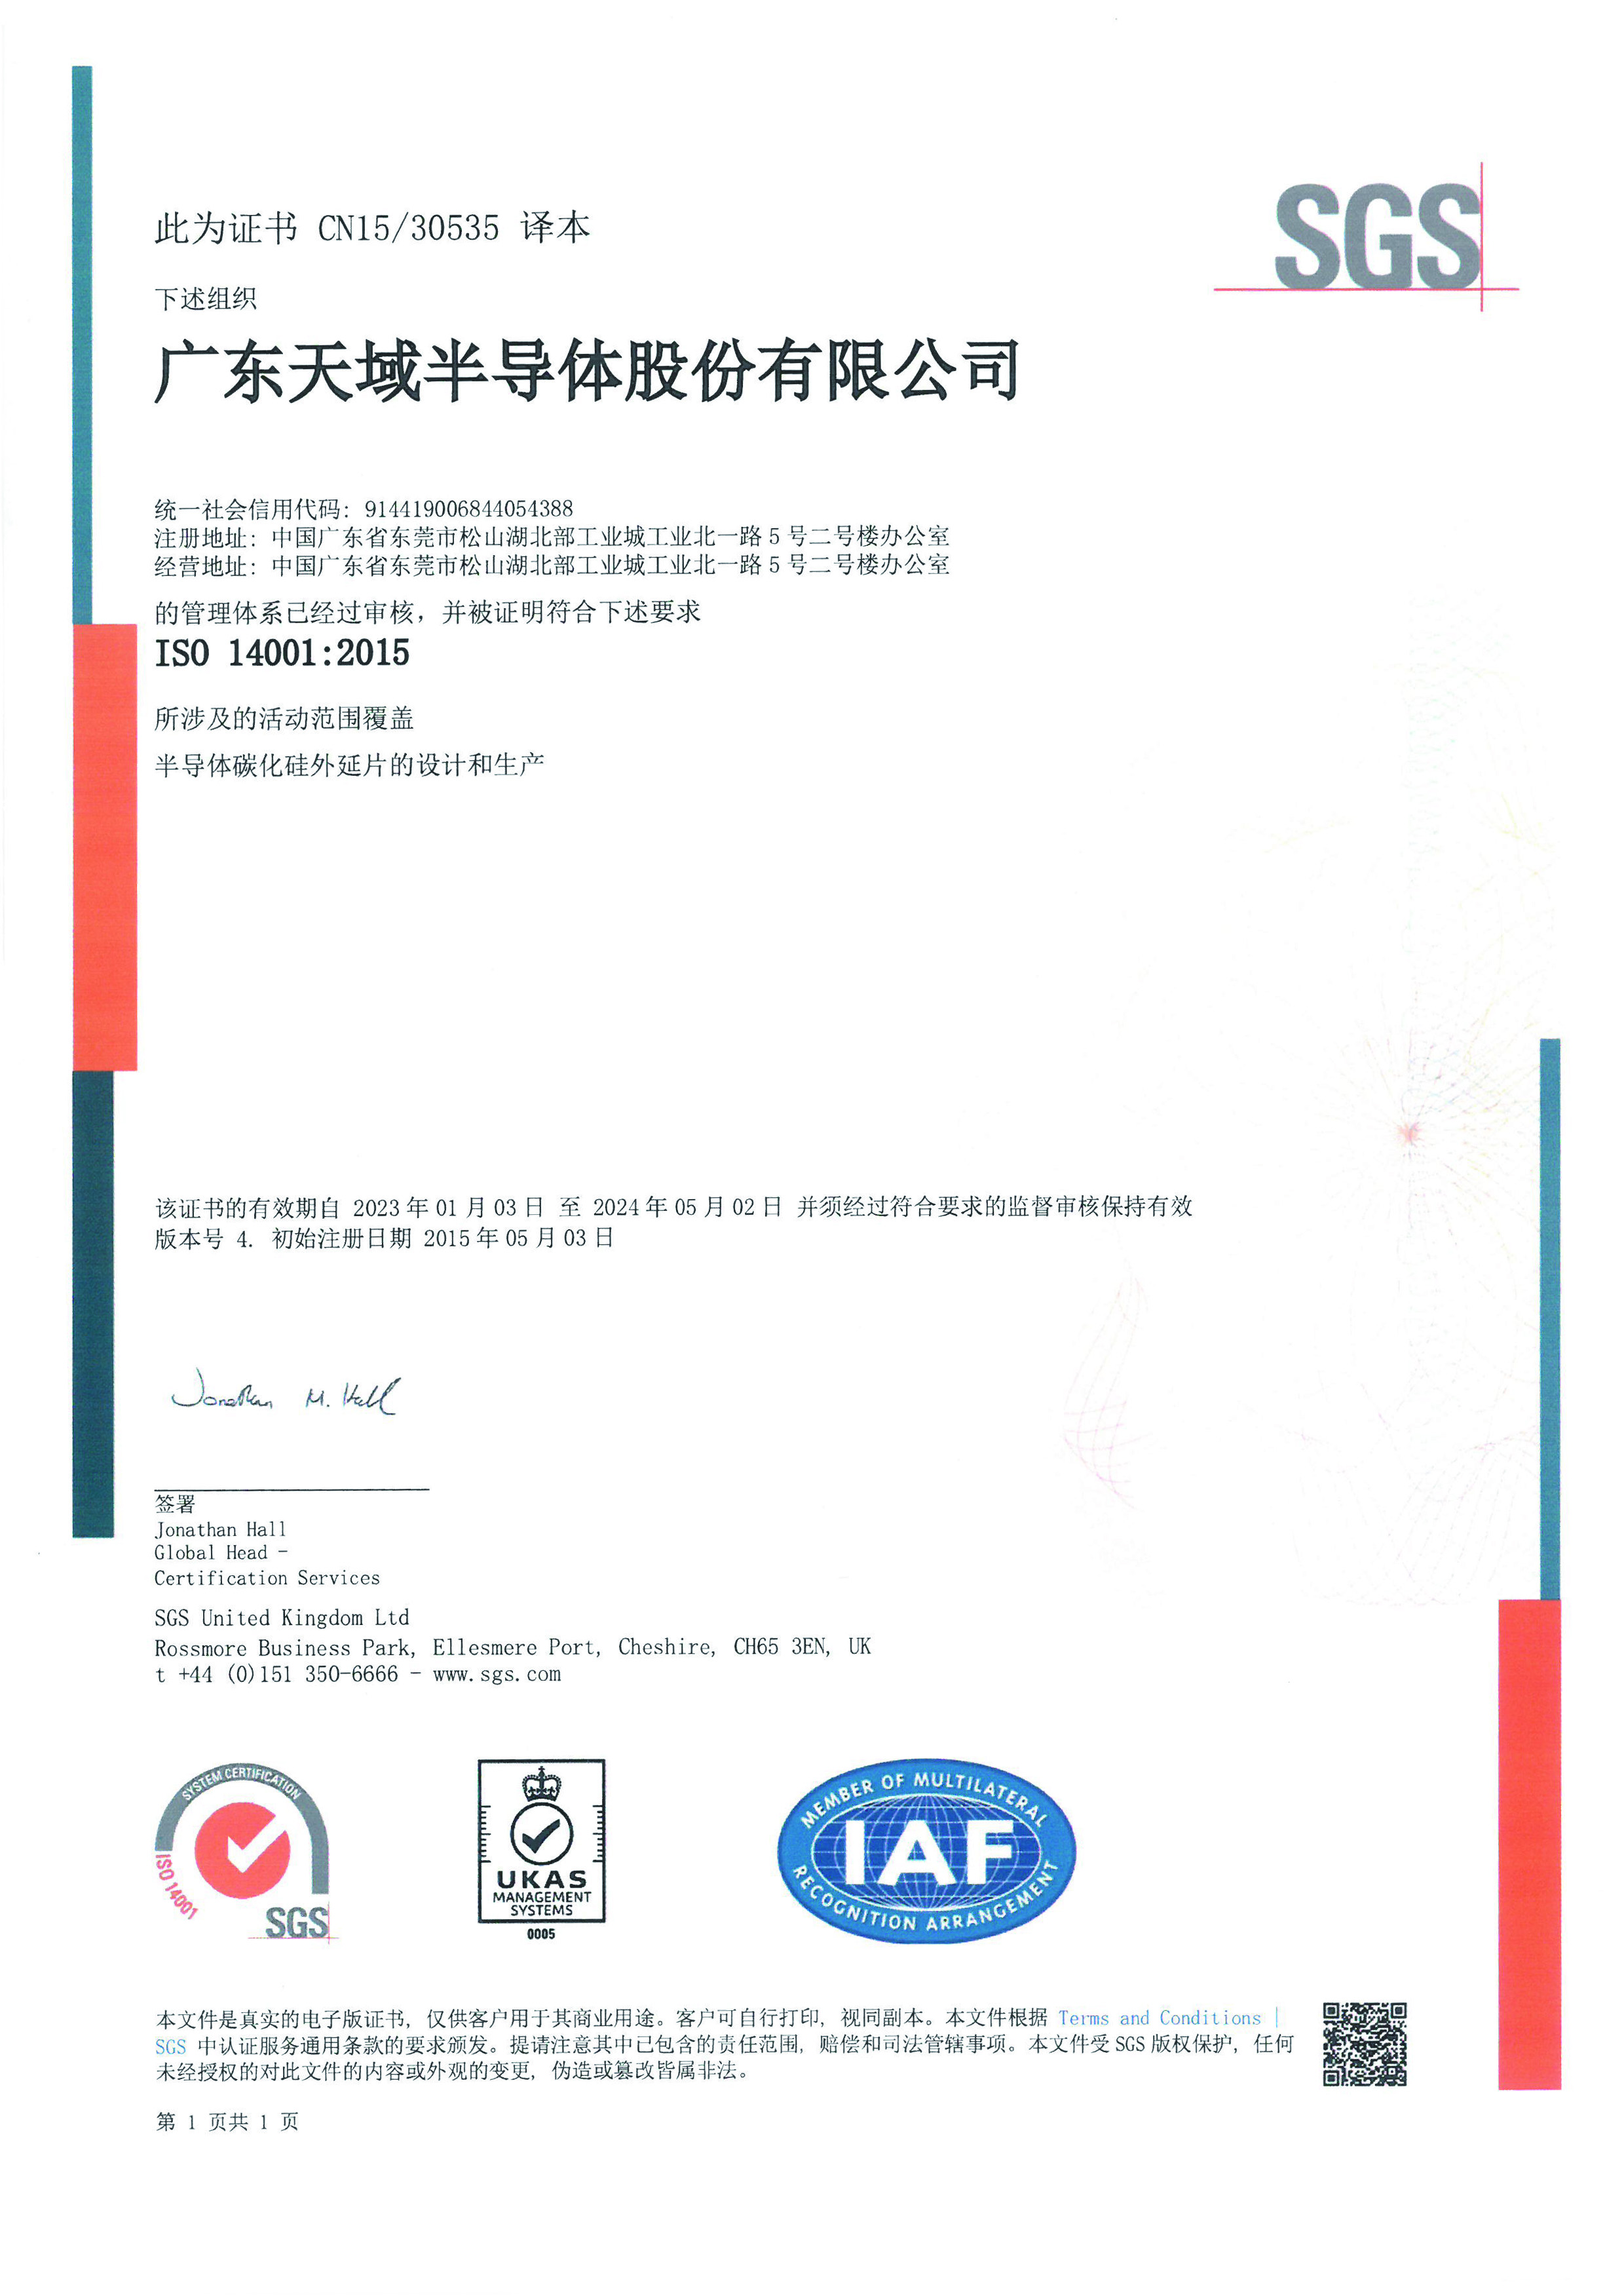 ISO14001：2015中文版.jpg